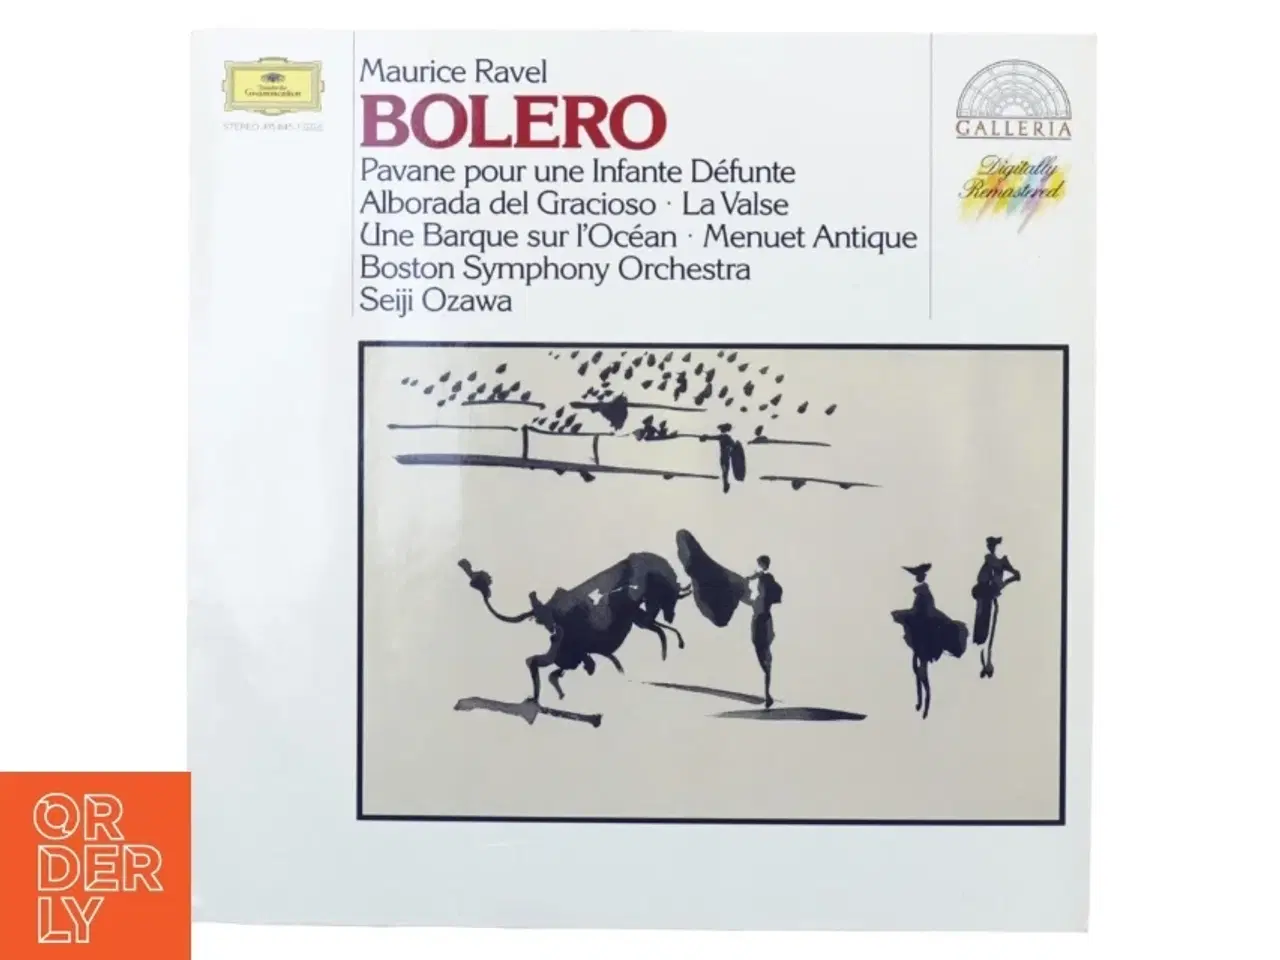 Billede 1 - Lp plade bolero, Ravel fra Digitally Remastered (str. 31 x 31 cm)